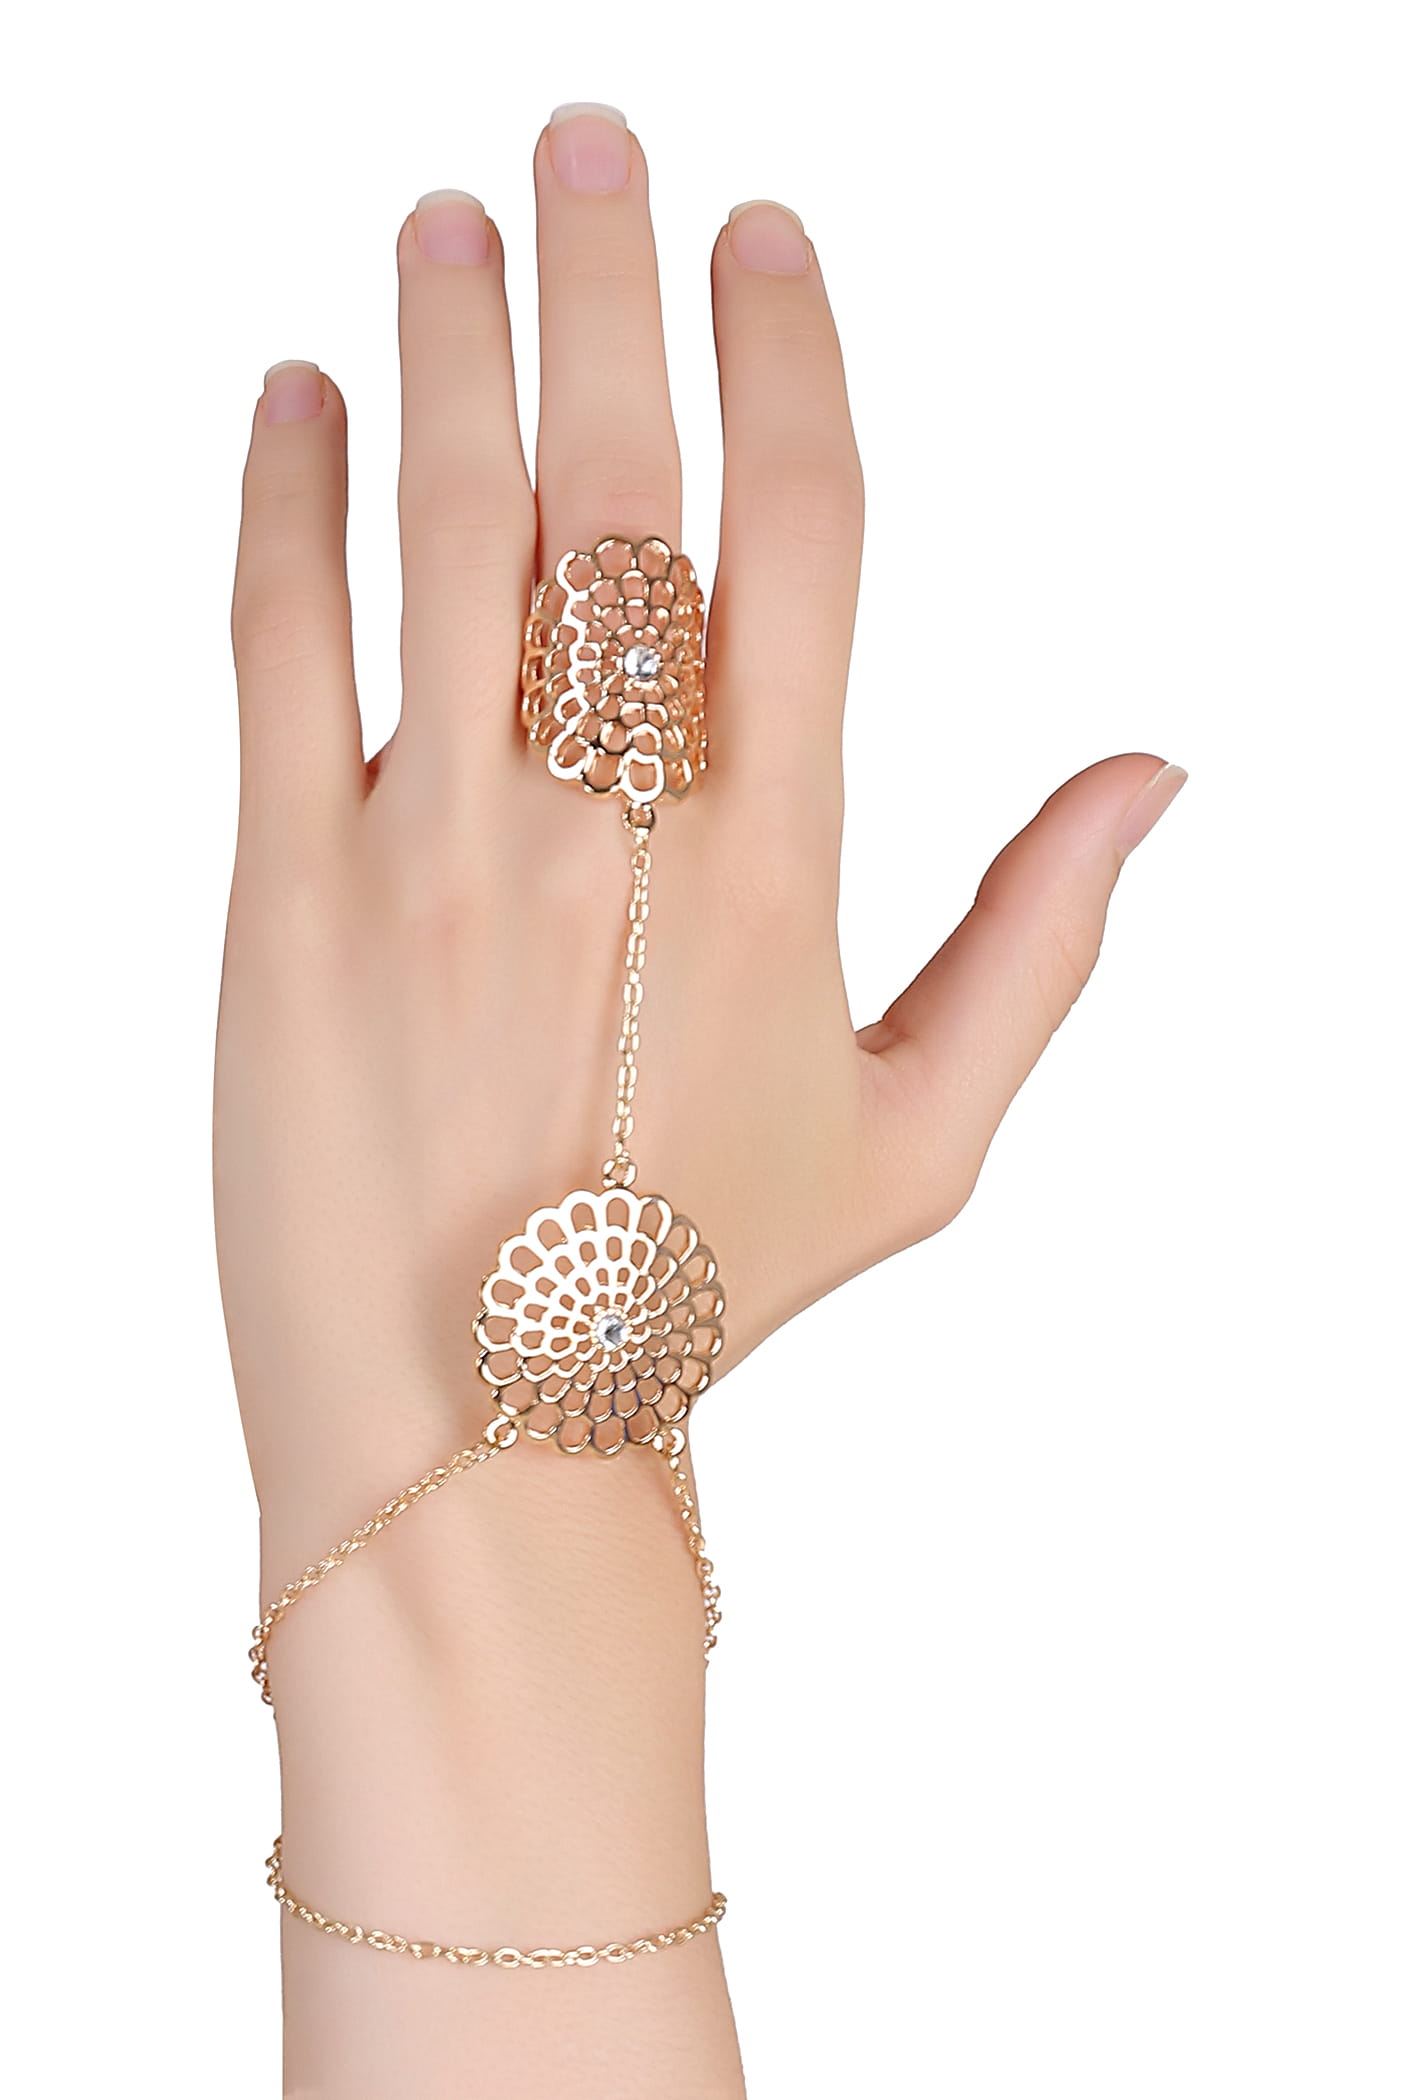 Buy Beaded Hand Chain Gold Ring Bracelet Ring Chain Bracelet, Gold Ring  Bracelet for Women, Bridal Bracelet, Connected Finger Bracelet Online in  India - Etsy